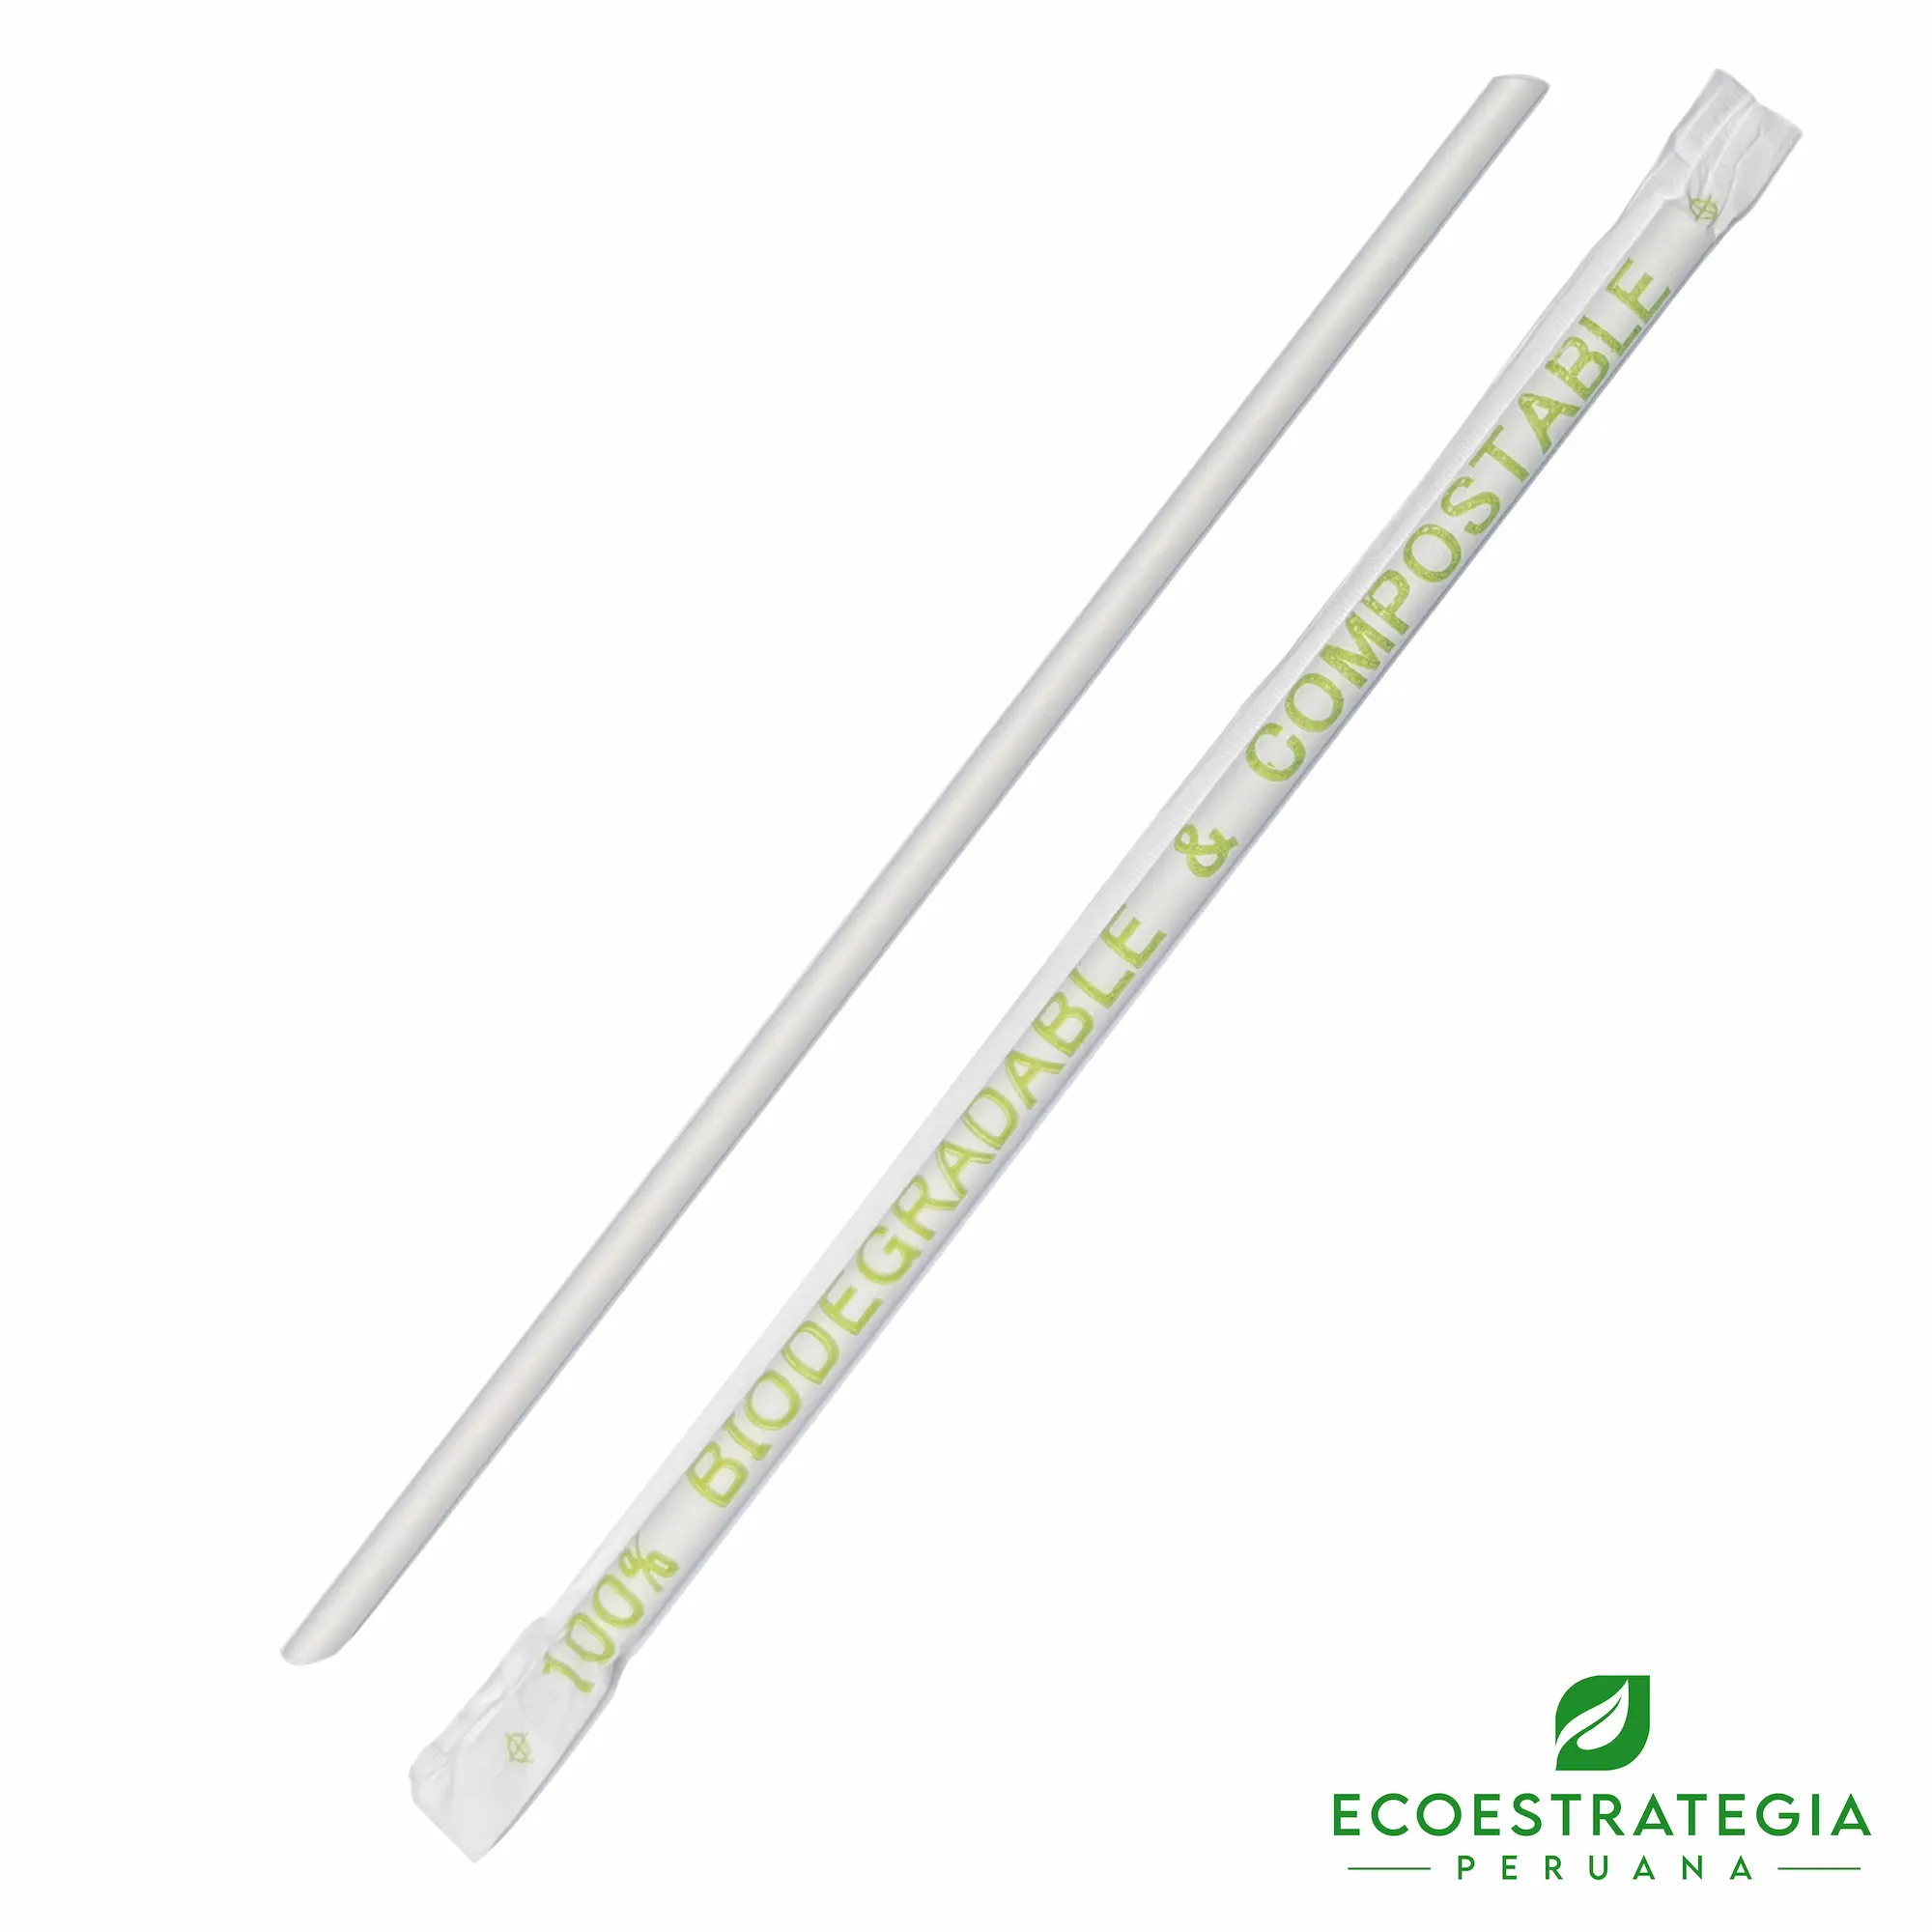 Este sorbete biodegradable para bebidas de 6mm es un producto reciclable hecho de papel. Cotiza tus cañitas y popotes compostables, reciclables y ecológicos.